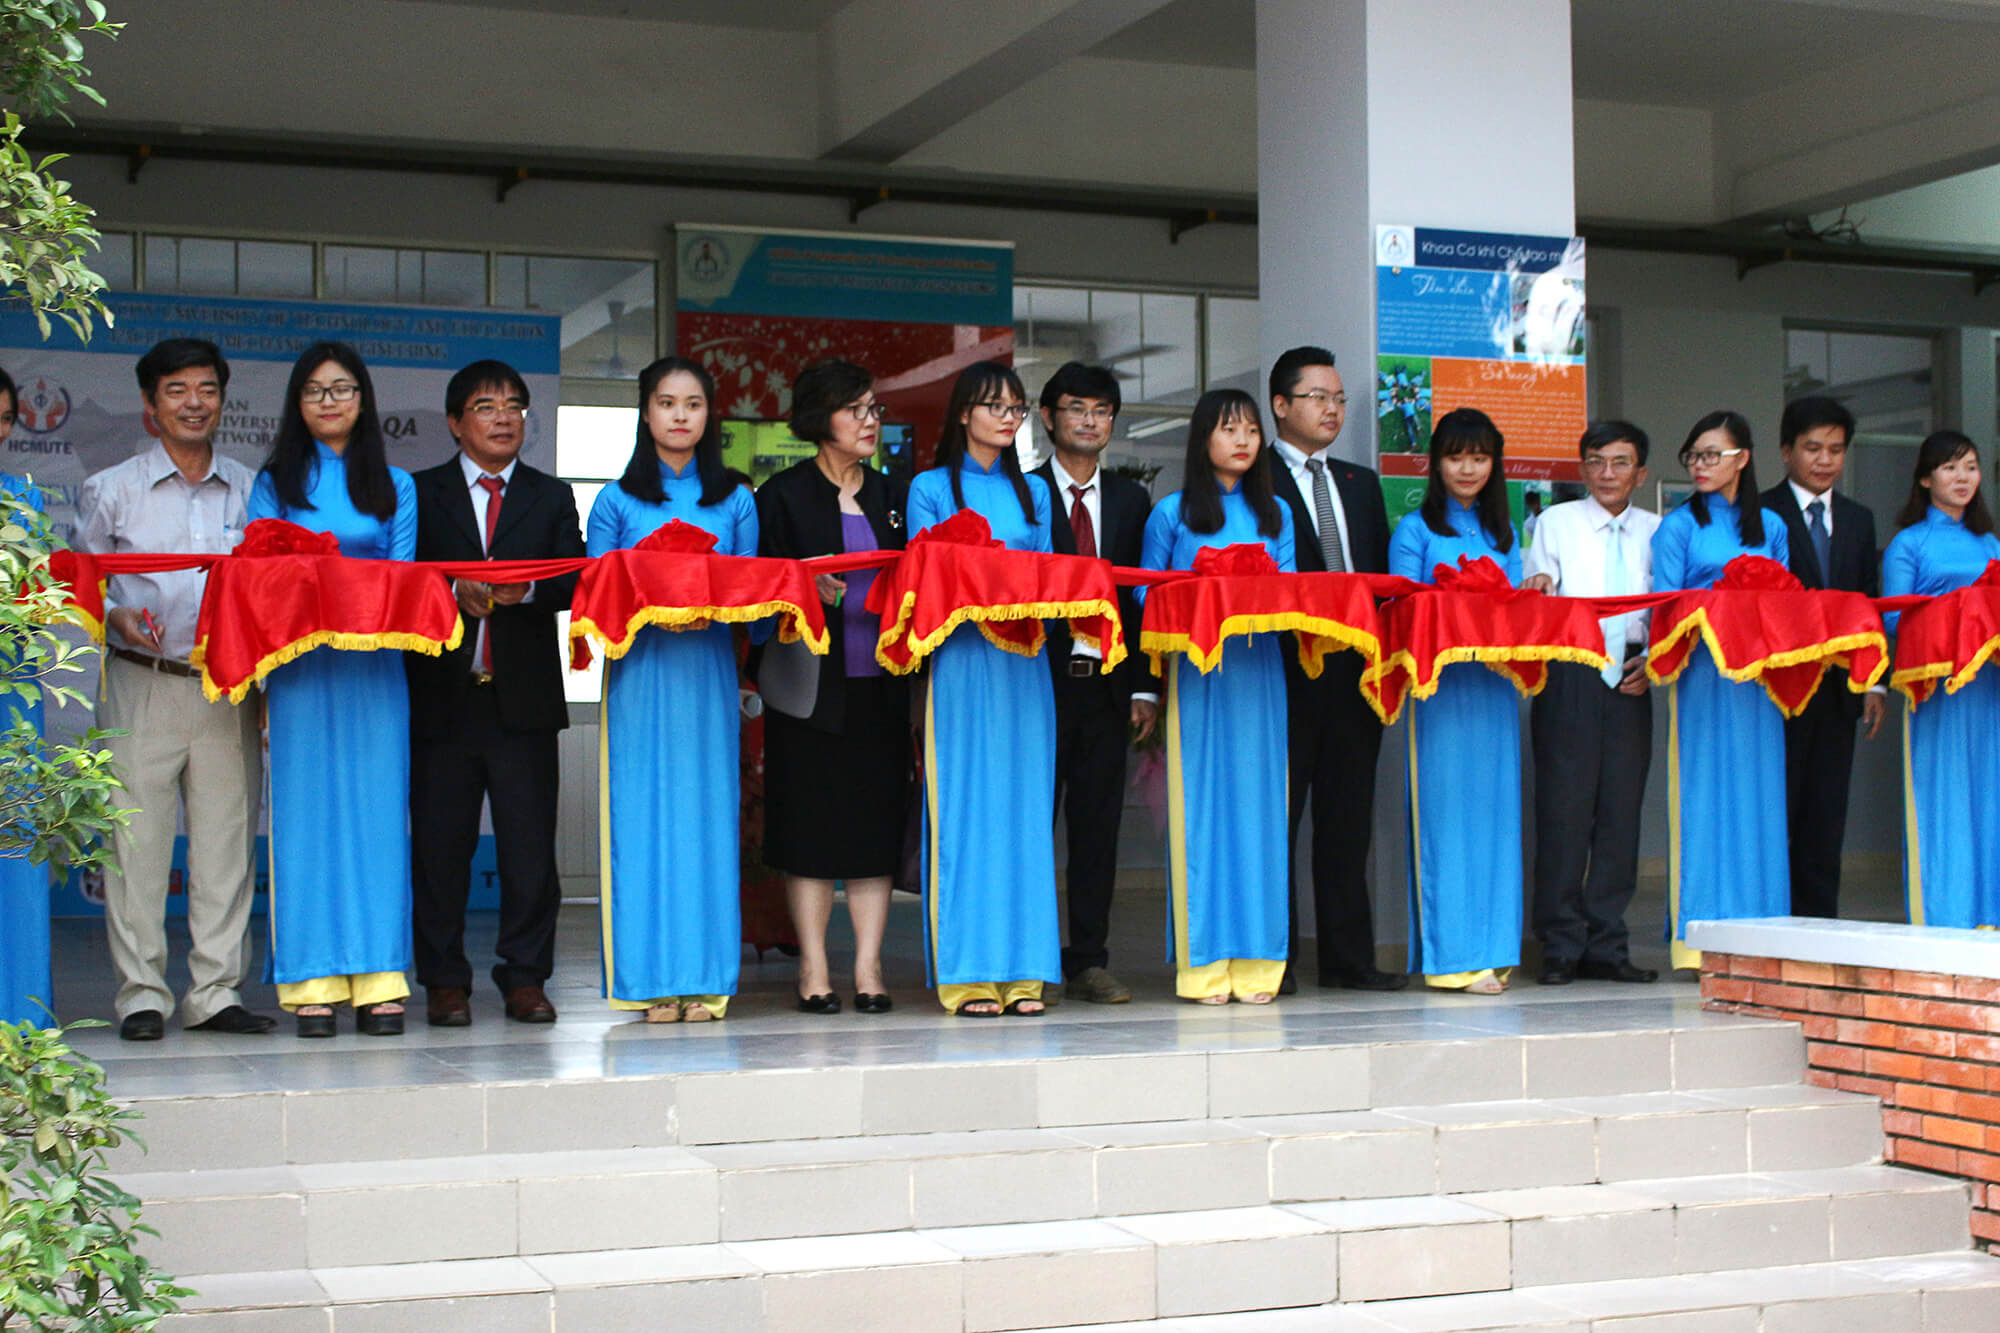 Hồng Ký tài trợ máy hàn cho trường Đại học Sư phạm Kỹ thuật TP. Hồ Chí Minh